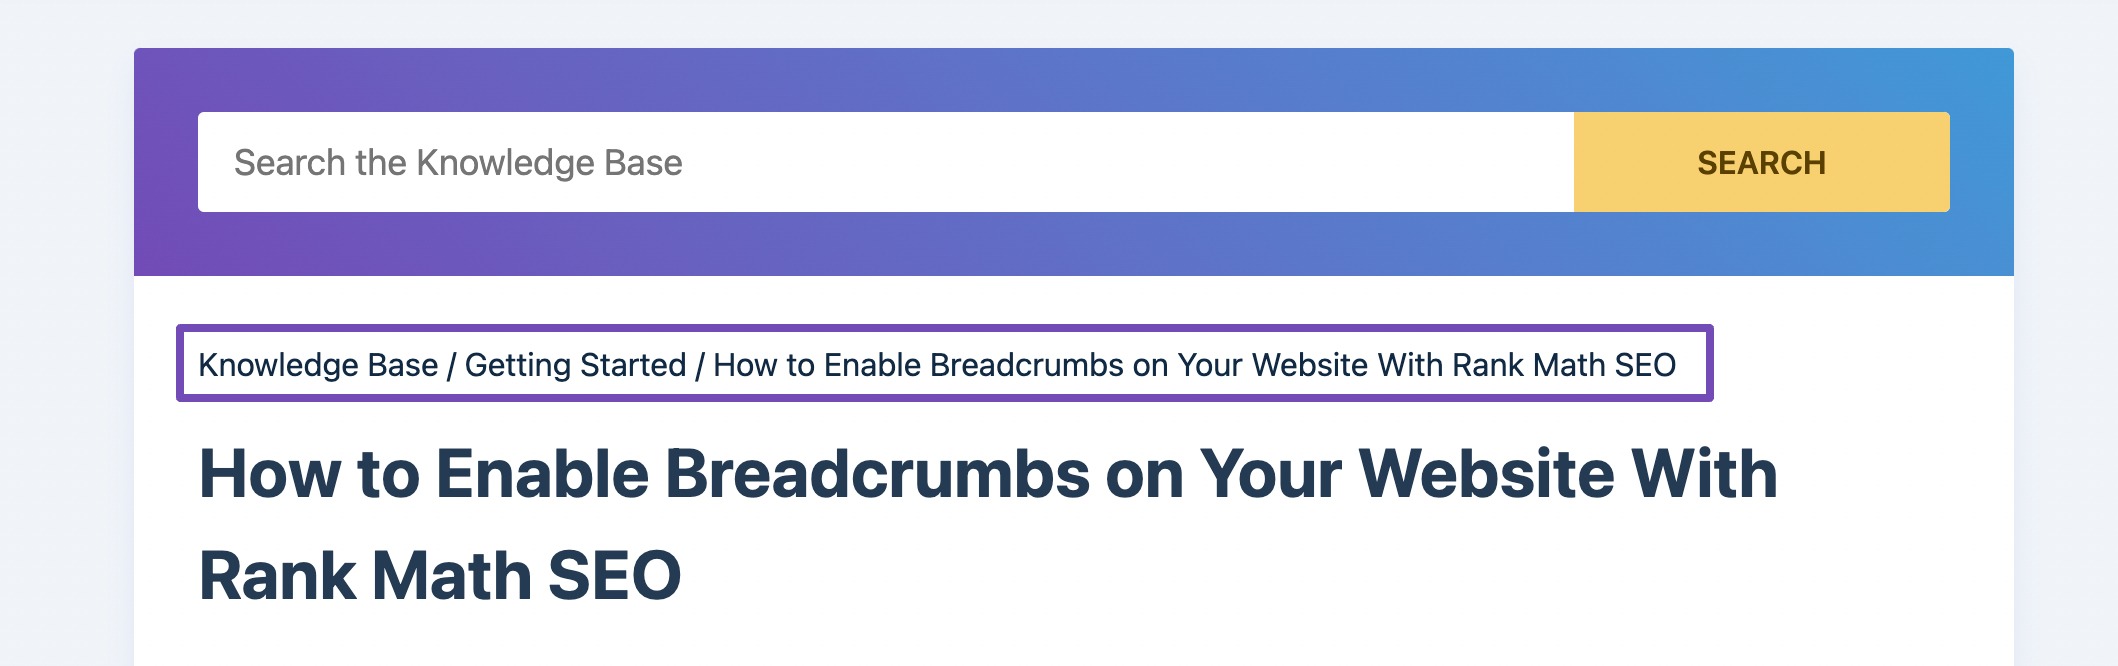 ตัวอย่างของ breadcrumbs